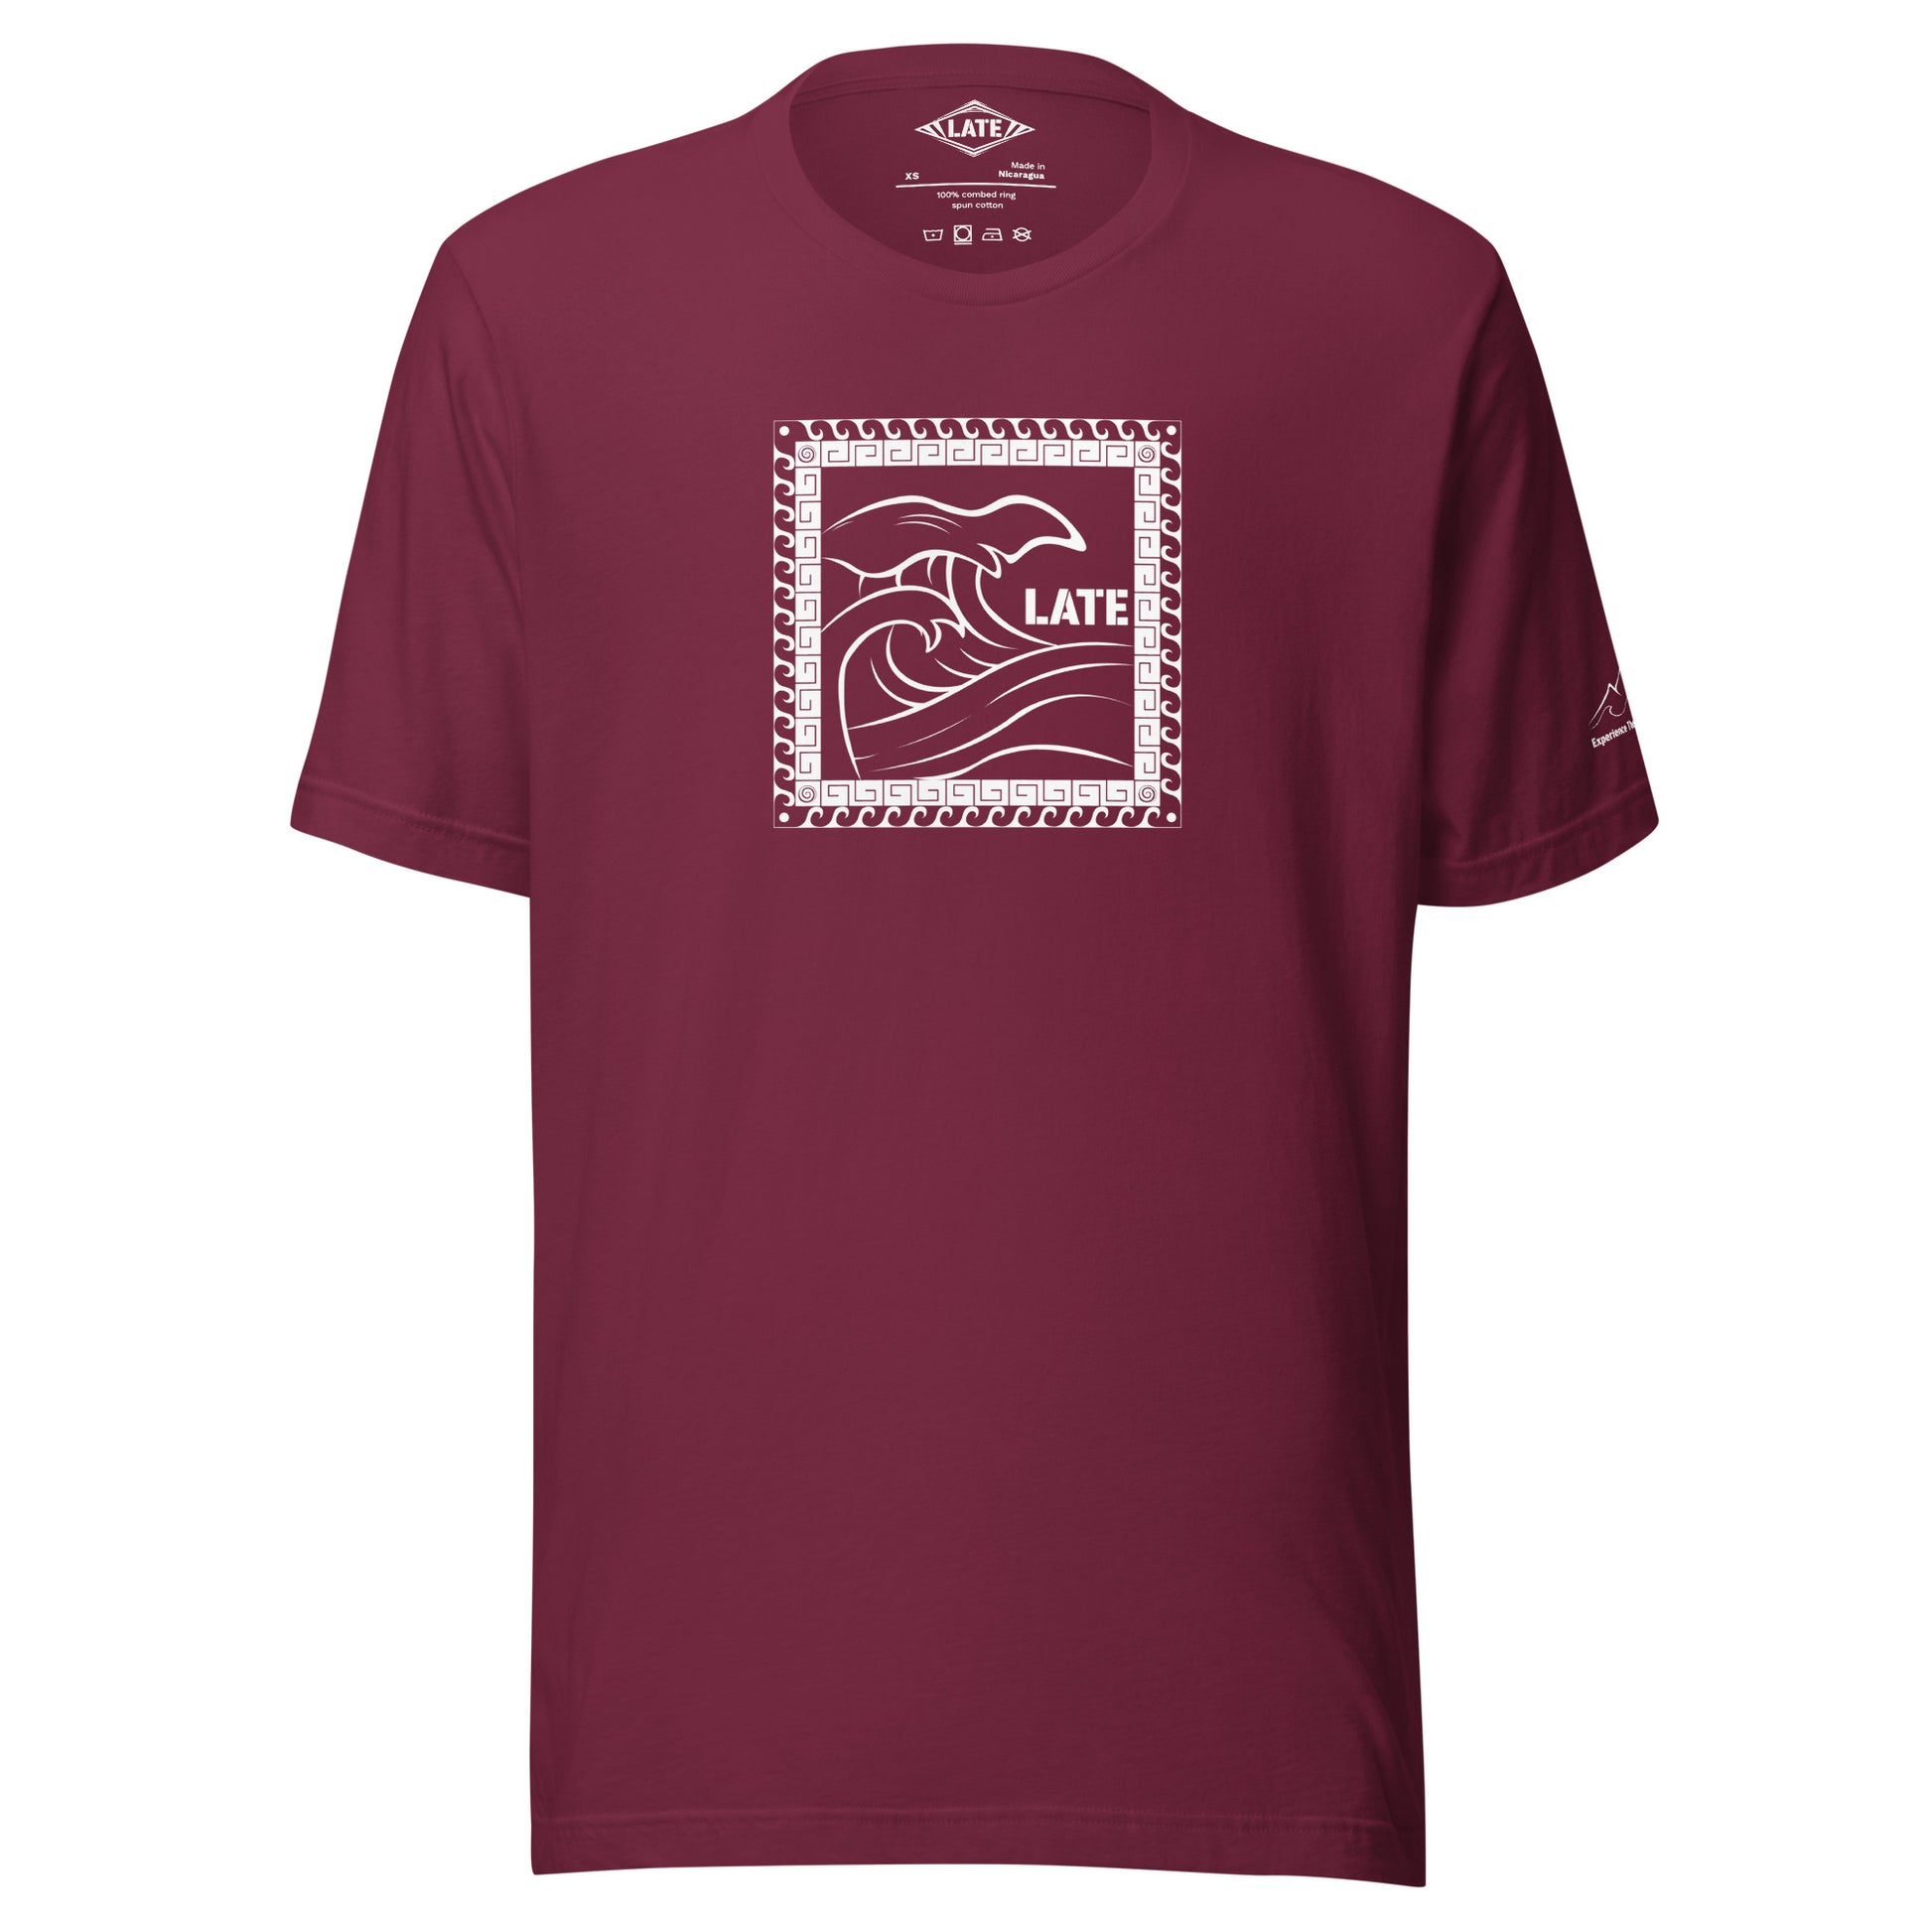 T-Shirt Tricky Wave design vague japonnaise et contour maori texte Late marque de vetement de surf. Tshirt unisex couleur bordeaux